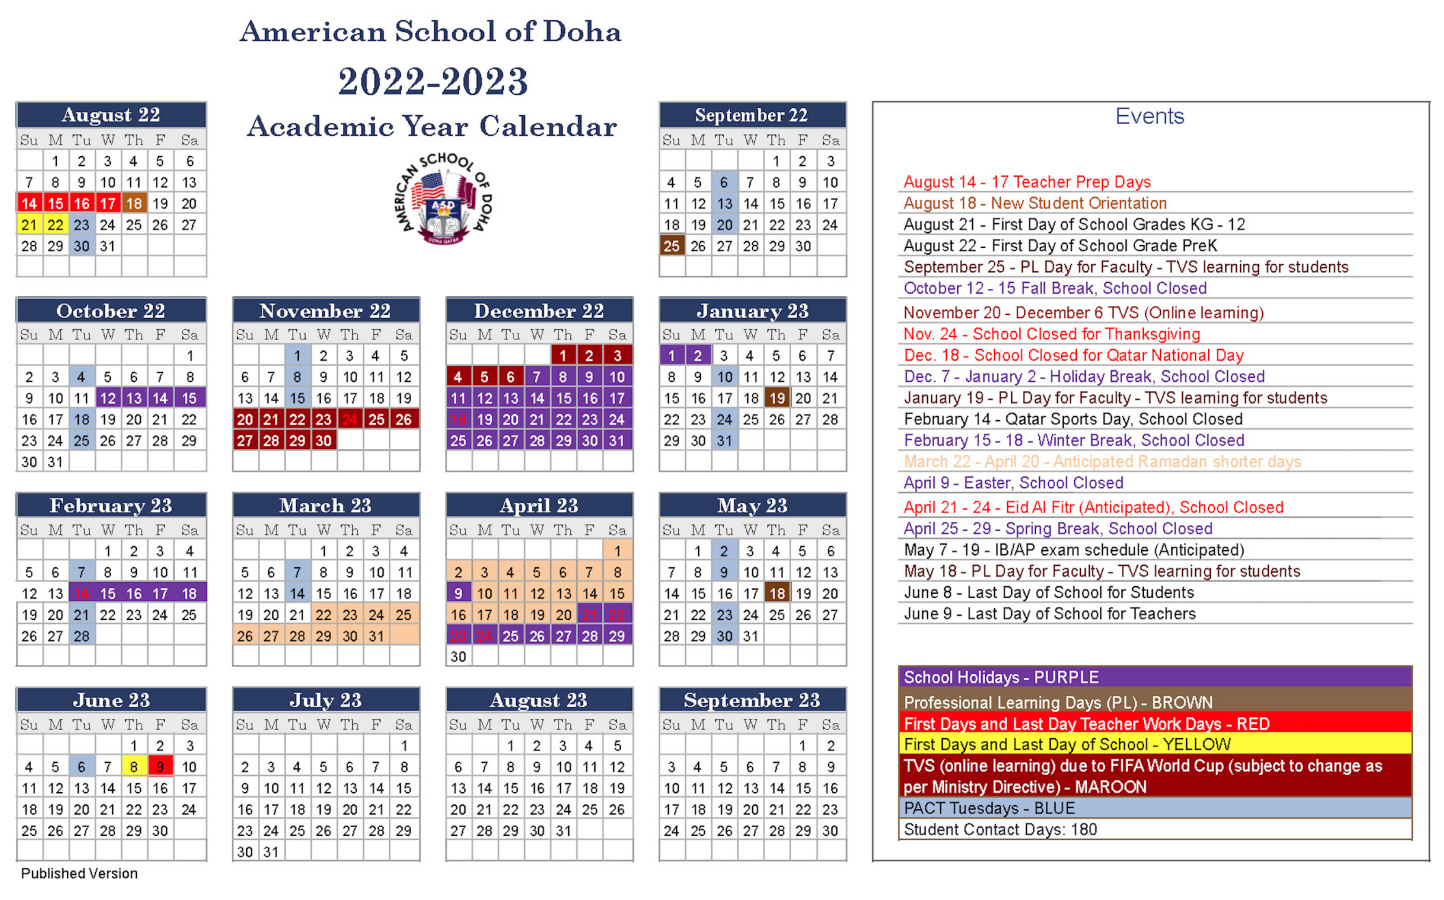 ASD Calendar Published Version American School Of Doha International School In Qatar